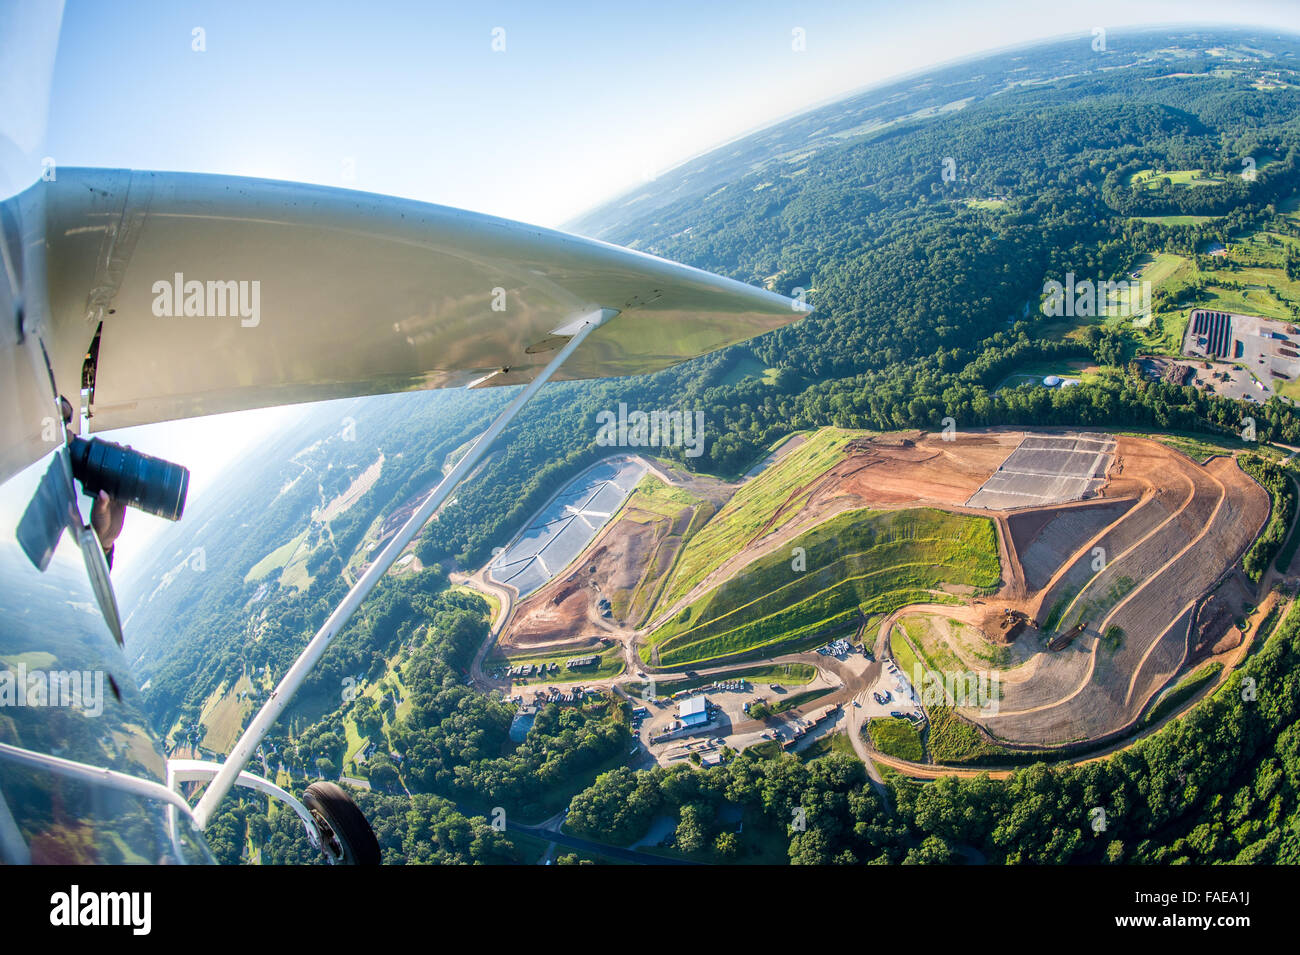 Aile d'avion et vue aérienne des terres agricoles dans le comté de Harford, Maryland Banque D'Images